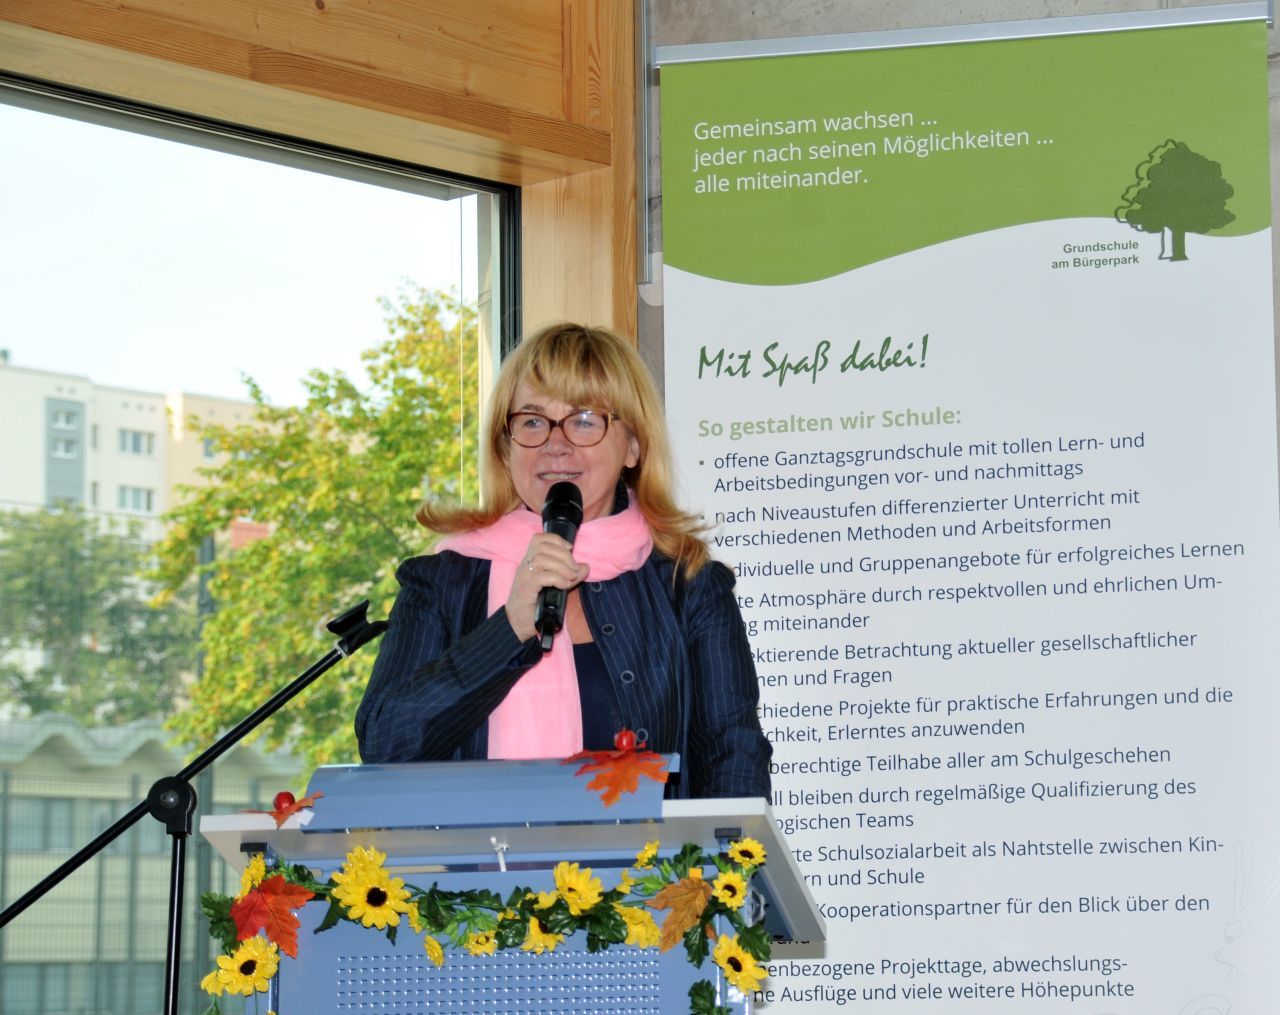 Mehrfache Übergabe Grundschule am Bürgerpark - Ansprache Bezirksstadträtin Juliane Witt